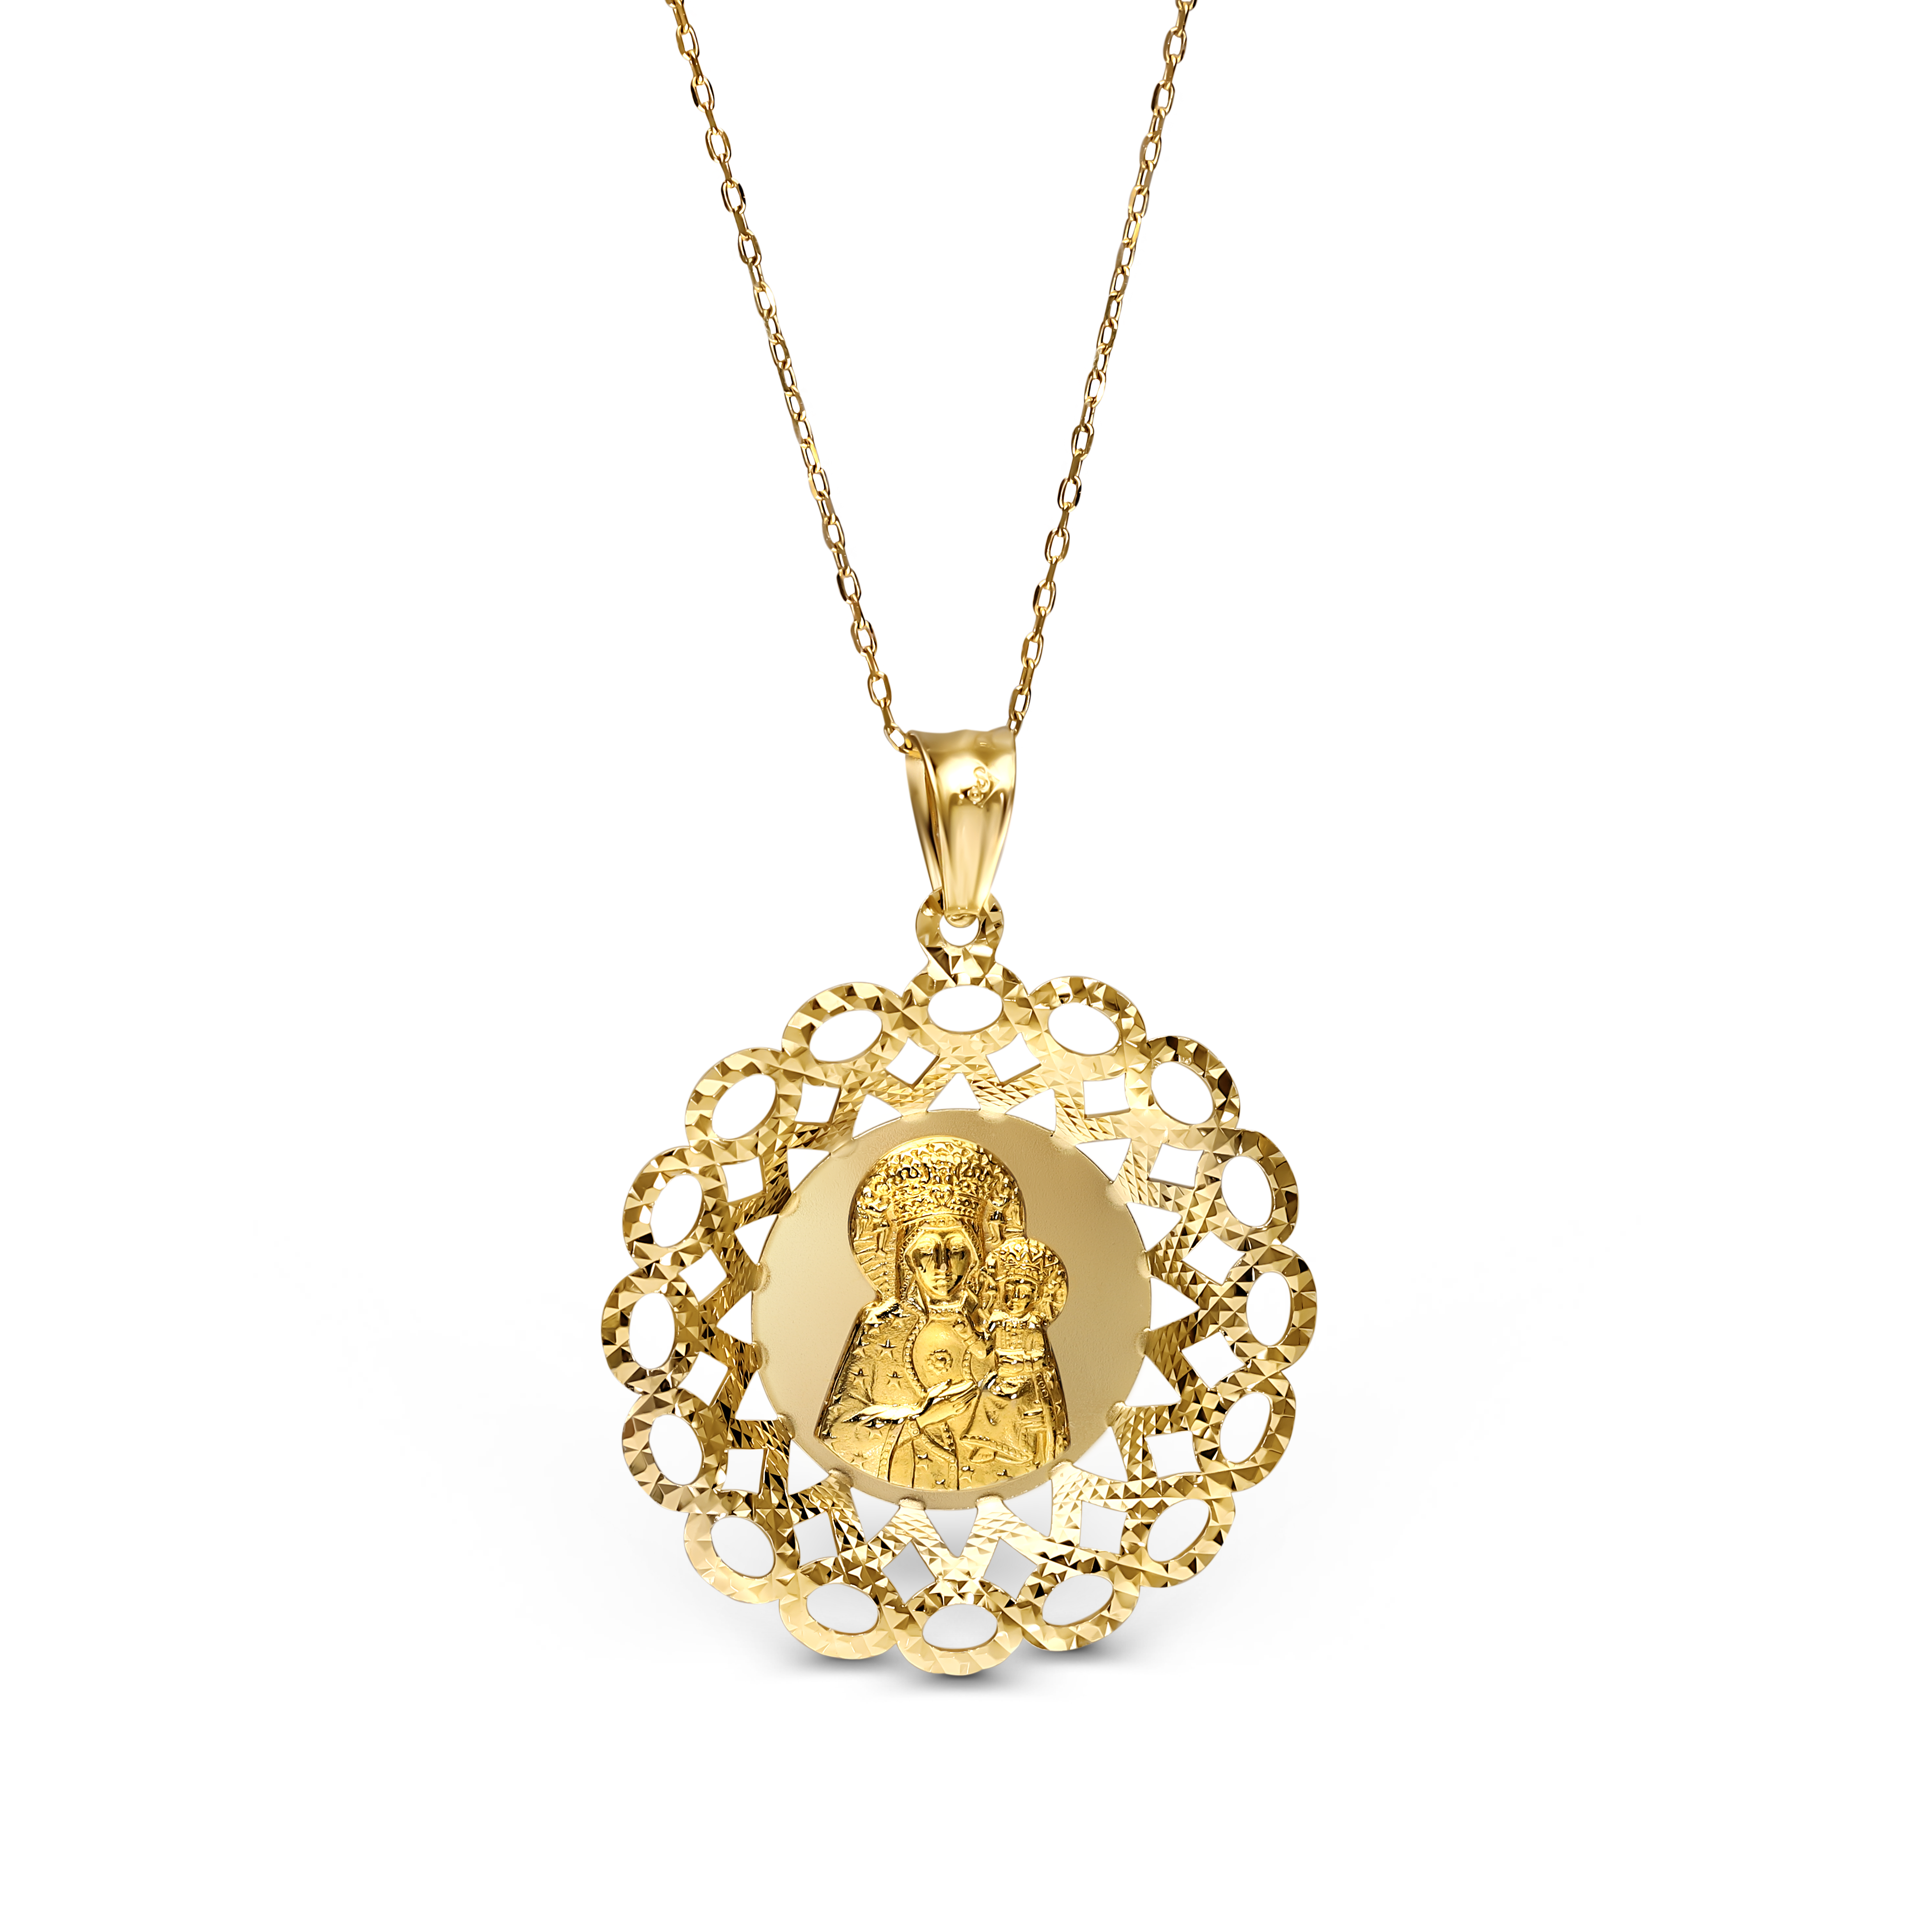 Duży medalik złoty okrągły z wizerunkiem Matki Boskiej Częstochowskiej, próba 585